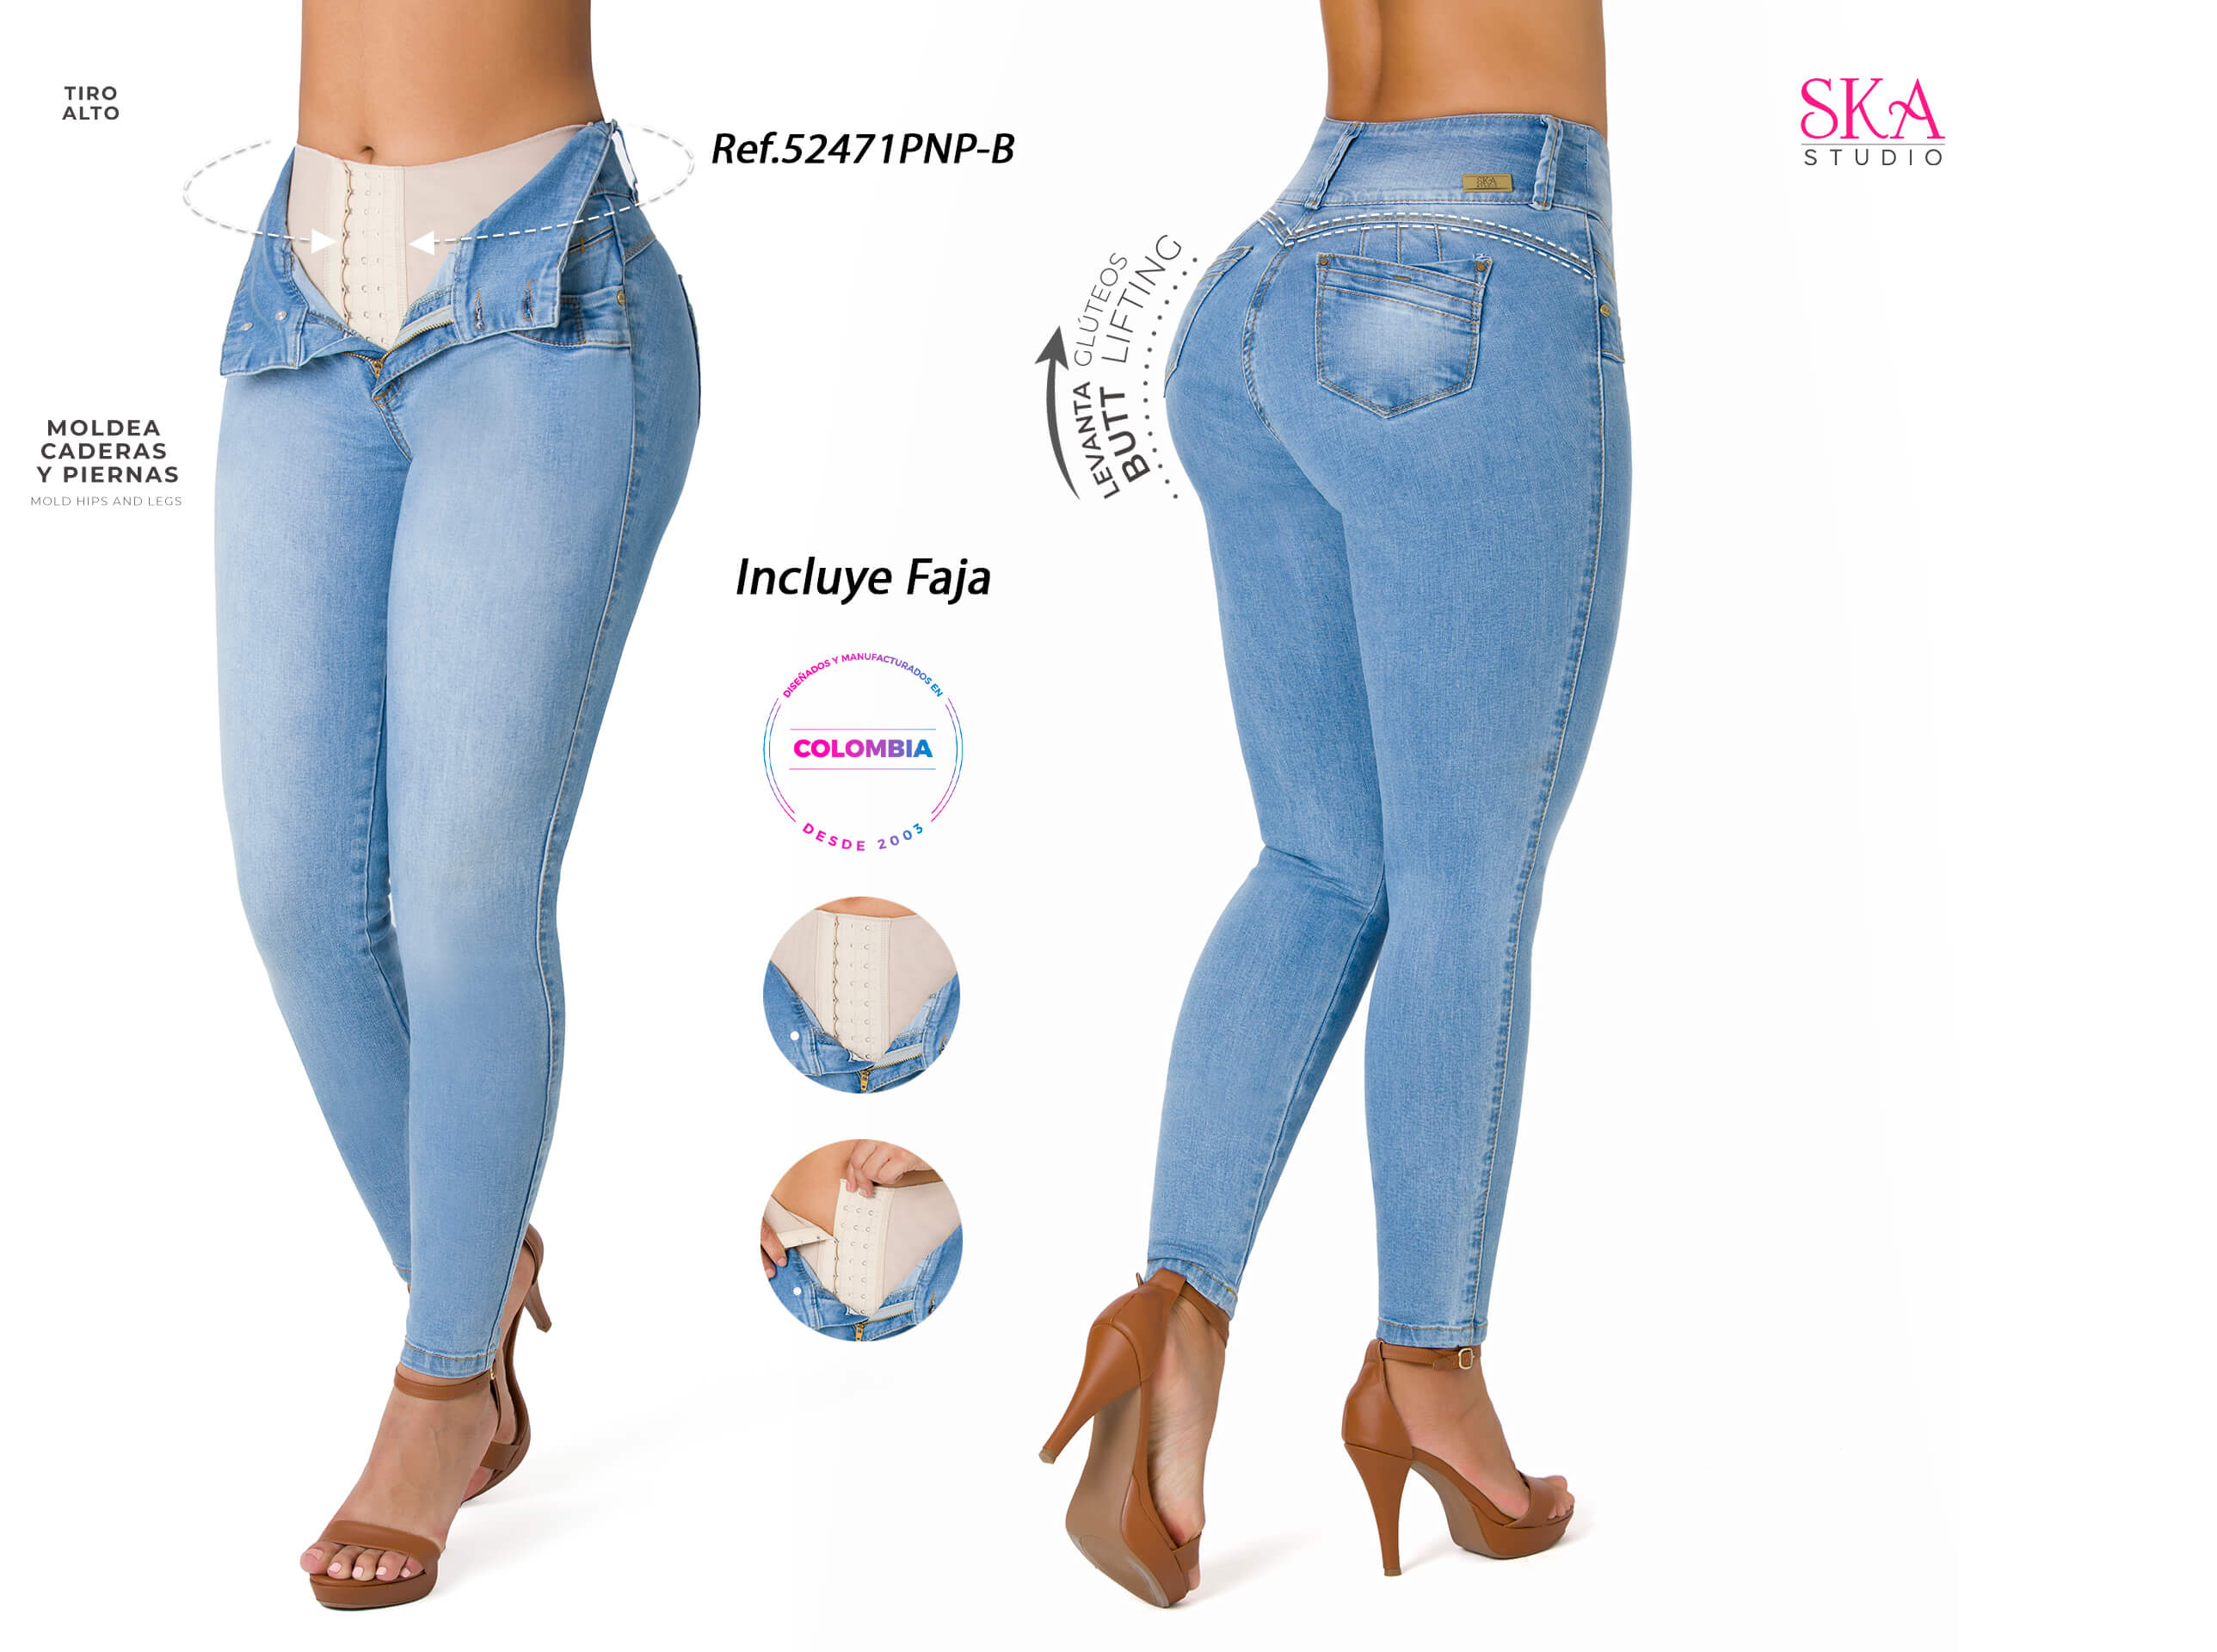 Jeans disponible PRECIO 12$ SS S y M L XL Jeans corte alto Tela 100% strech  Excelente calidad Efecto faja Saca pompis Somos…